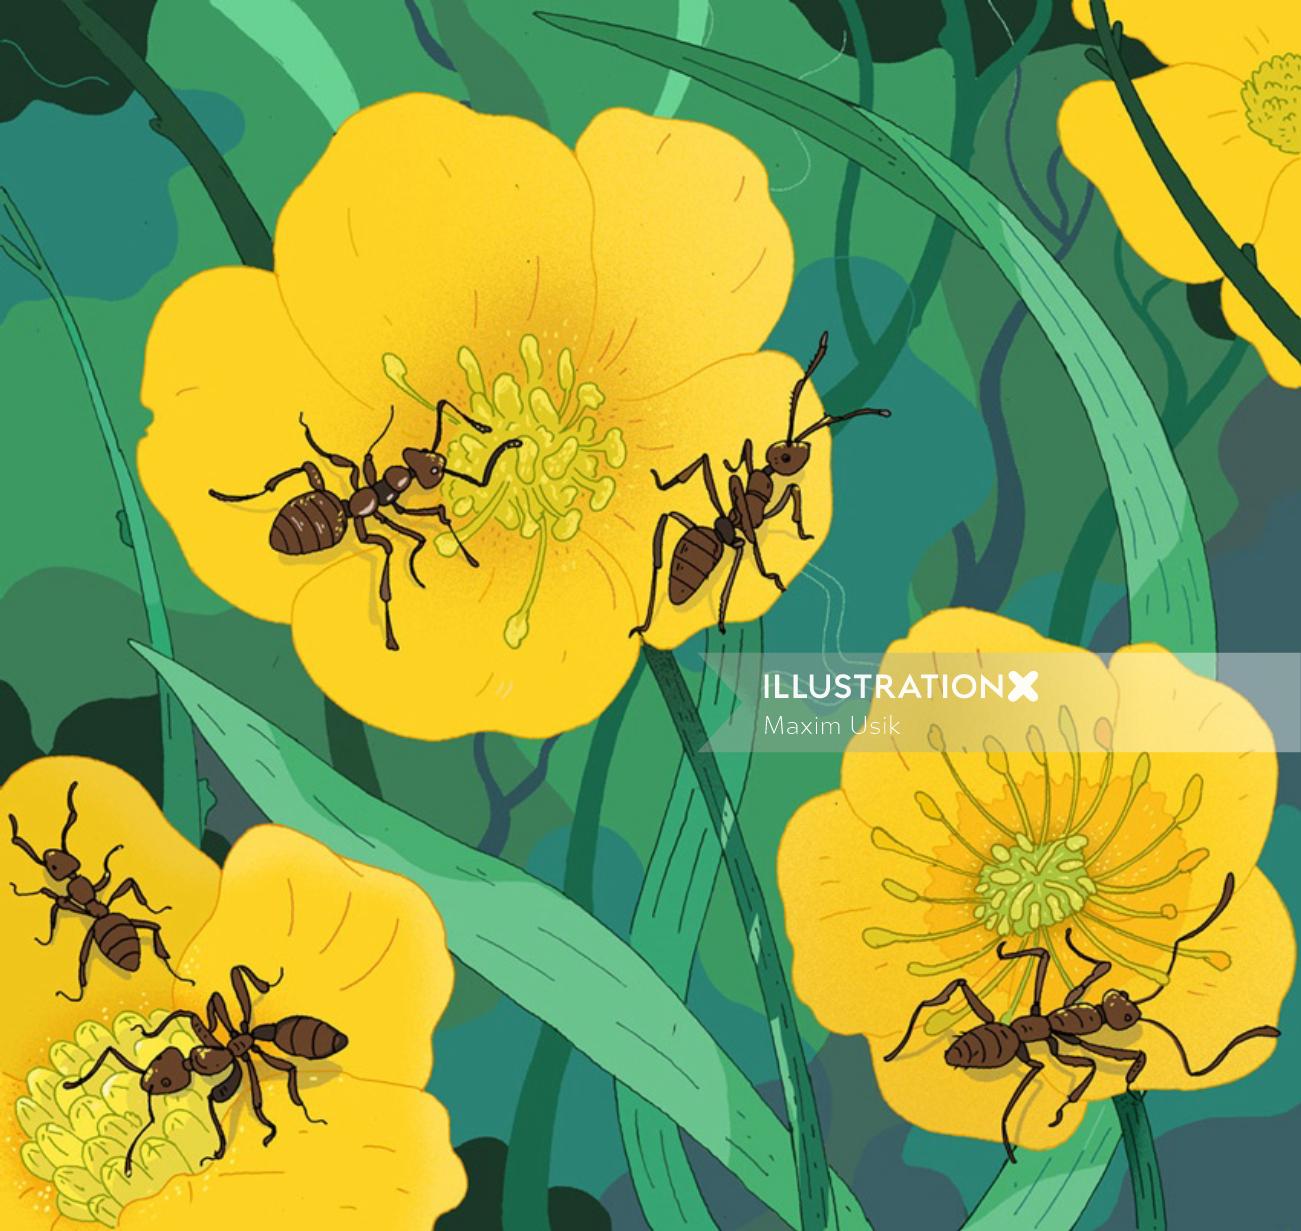 Gardening Magazine's Ant and Nectar Illustration